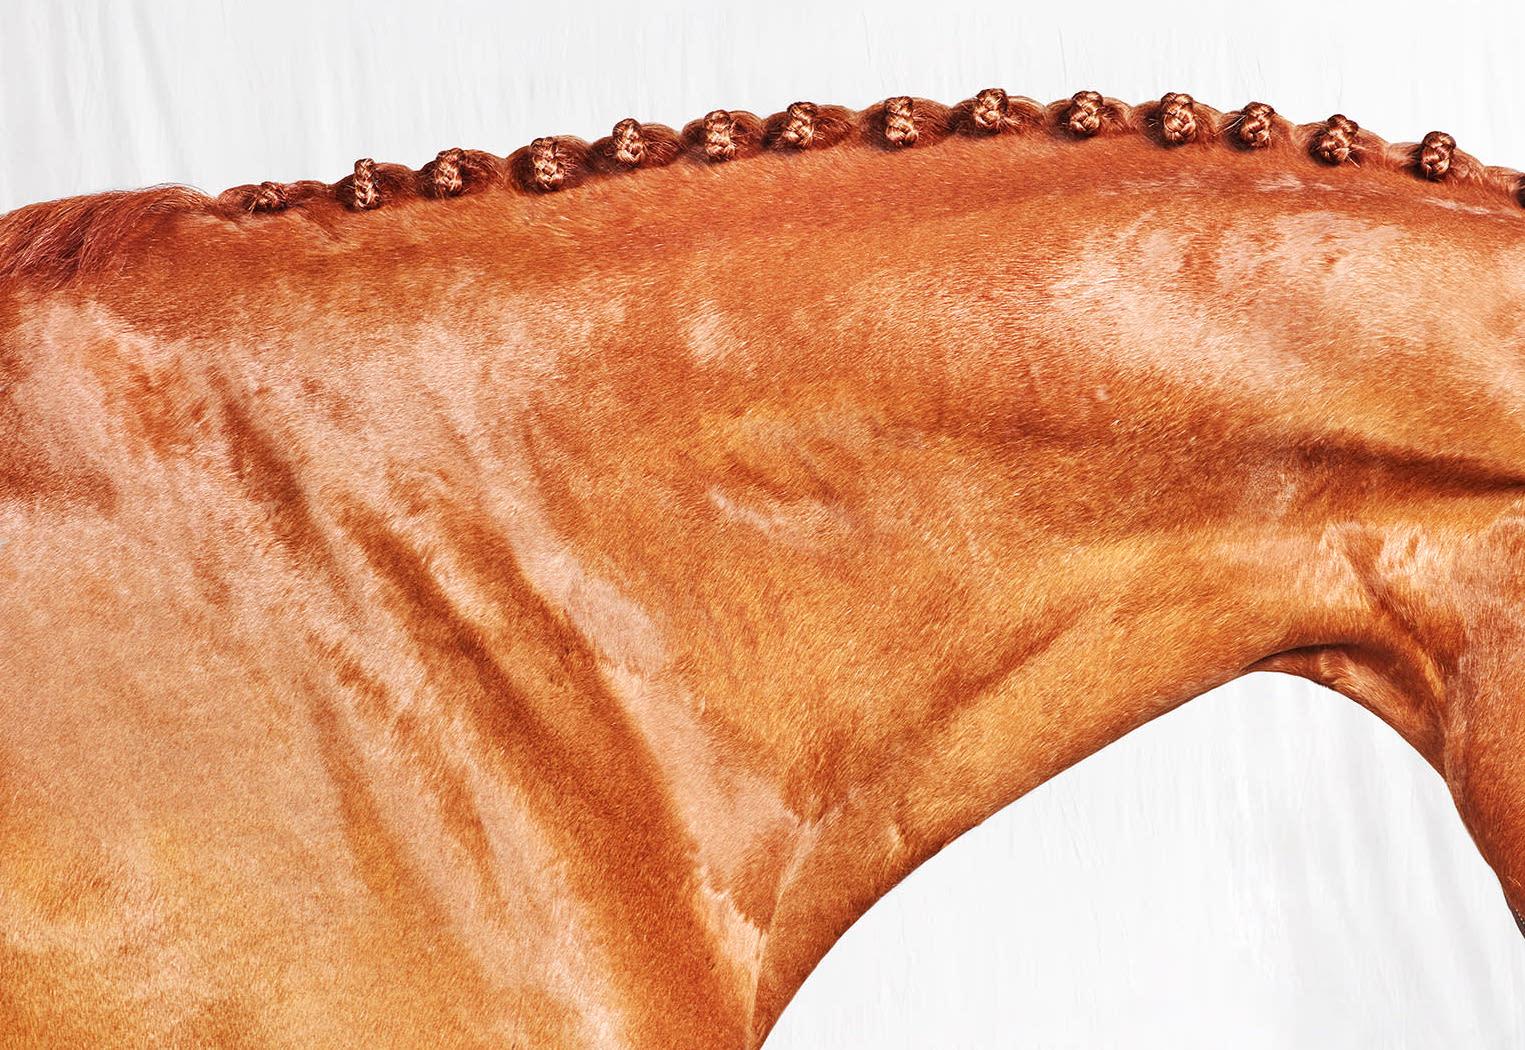 Romi Neck, 2017 von Juan Lamarca
Hochwertiges archivfestes Baumwollpapier
Bildgröße: 40 x 30 Zoll
Ausgabe 1 von 10 plus 2 AP
Ungerahmt

Die Horse Series von Juan Lamarca ist eine abstrakte Sammlung von Fotografien, die Hochleistungspferde zeigen.